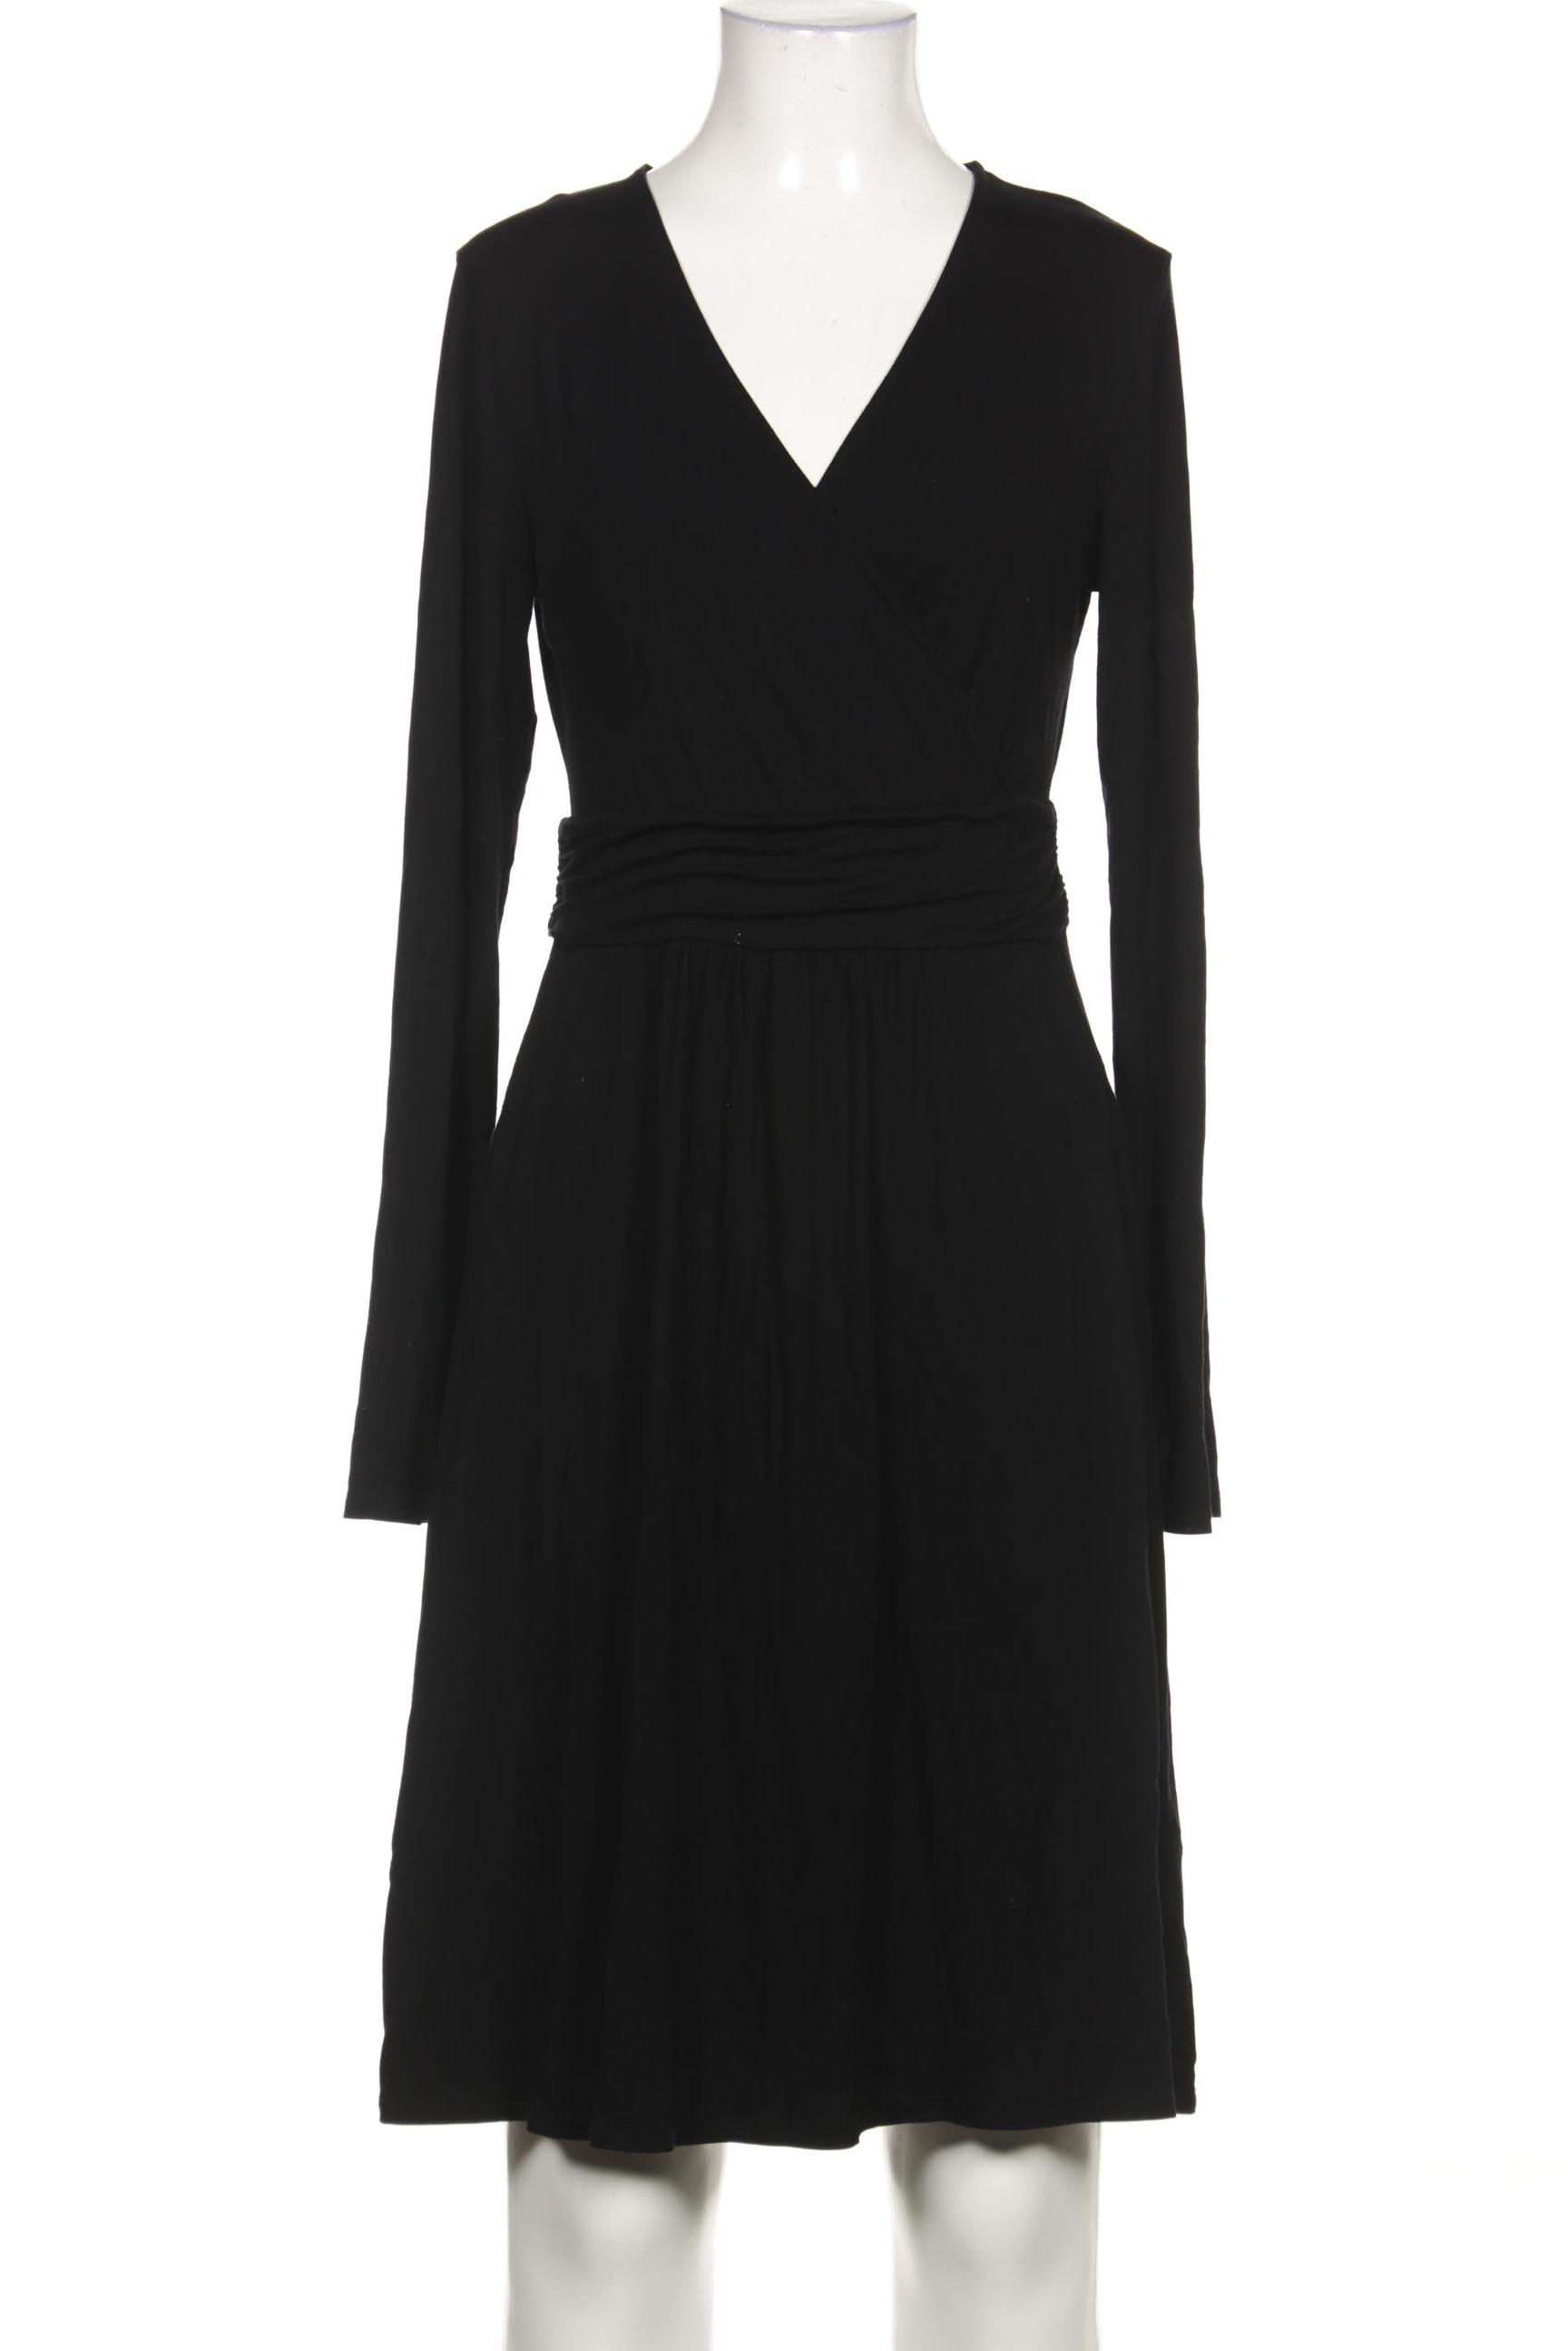 Boden Damen Kleid, schwarz, Gr. 34 von Boden